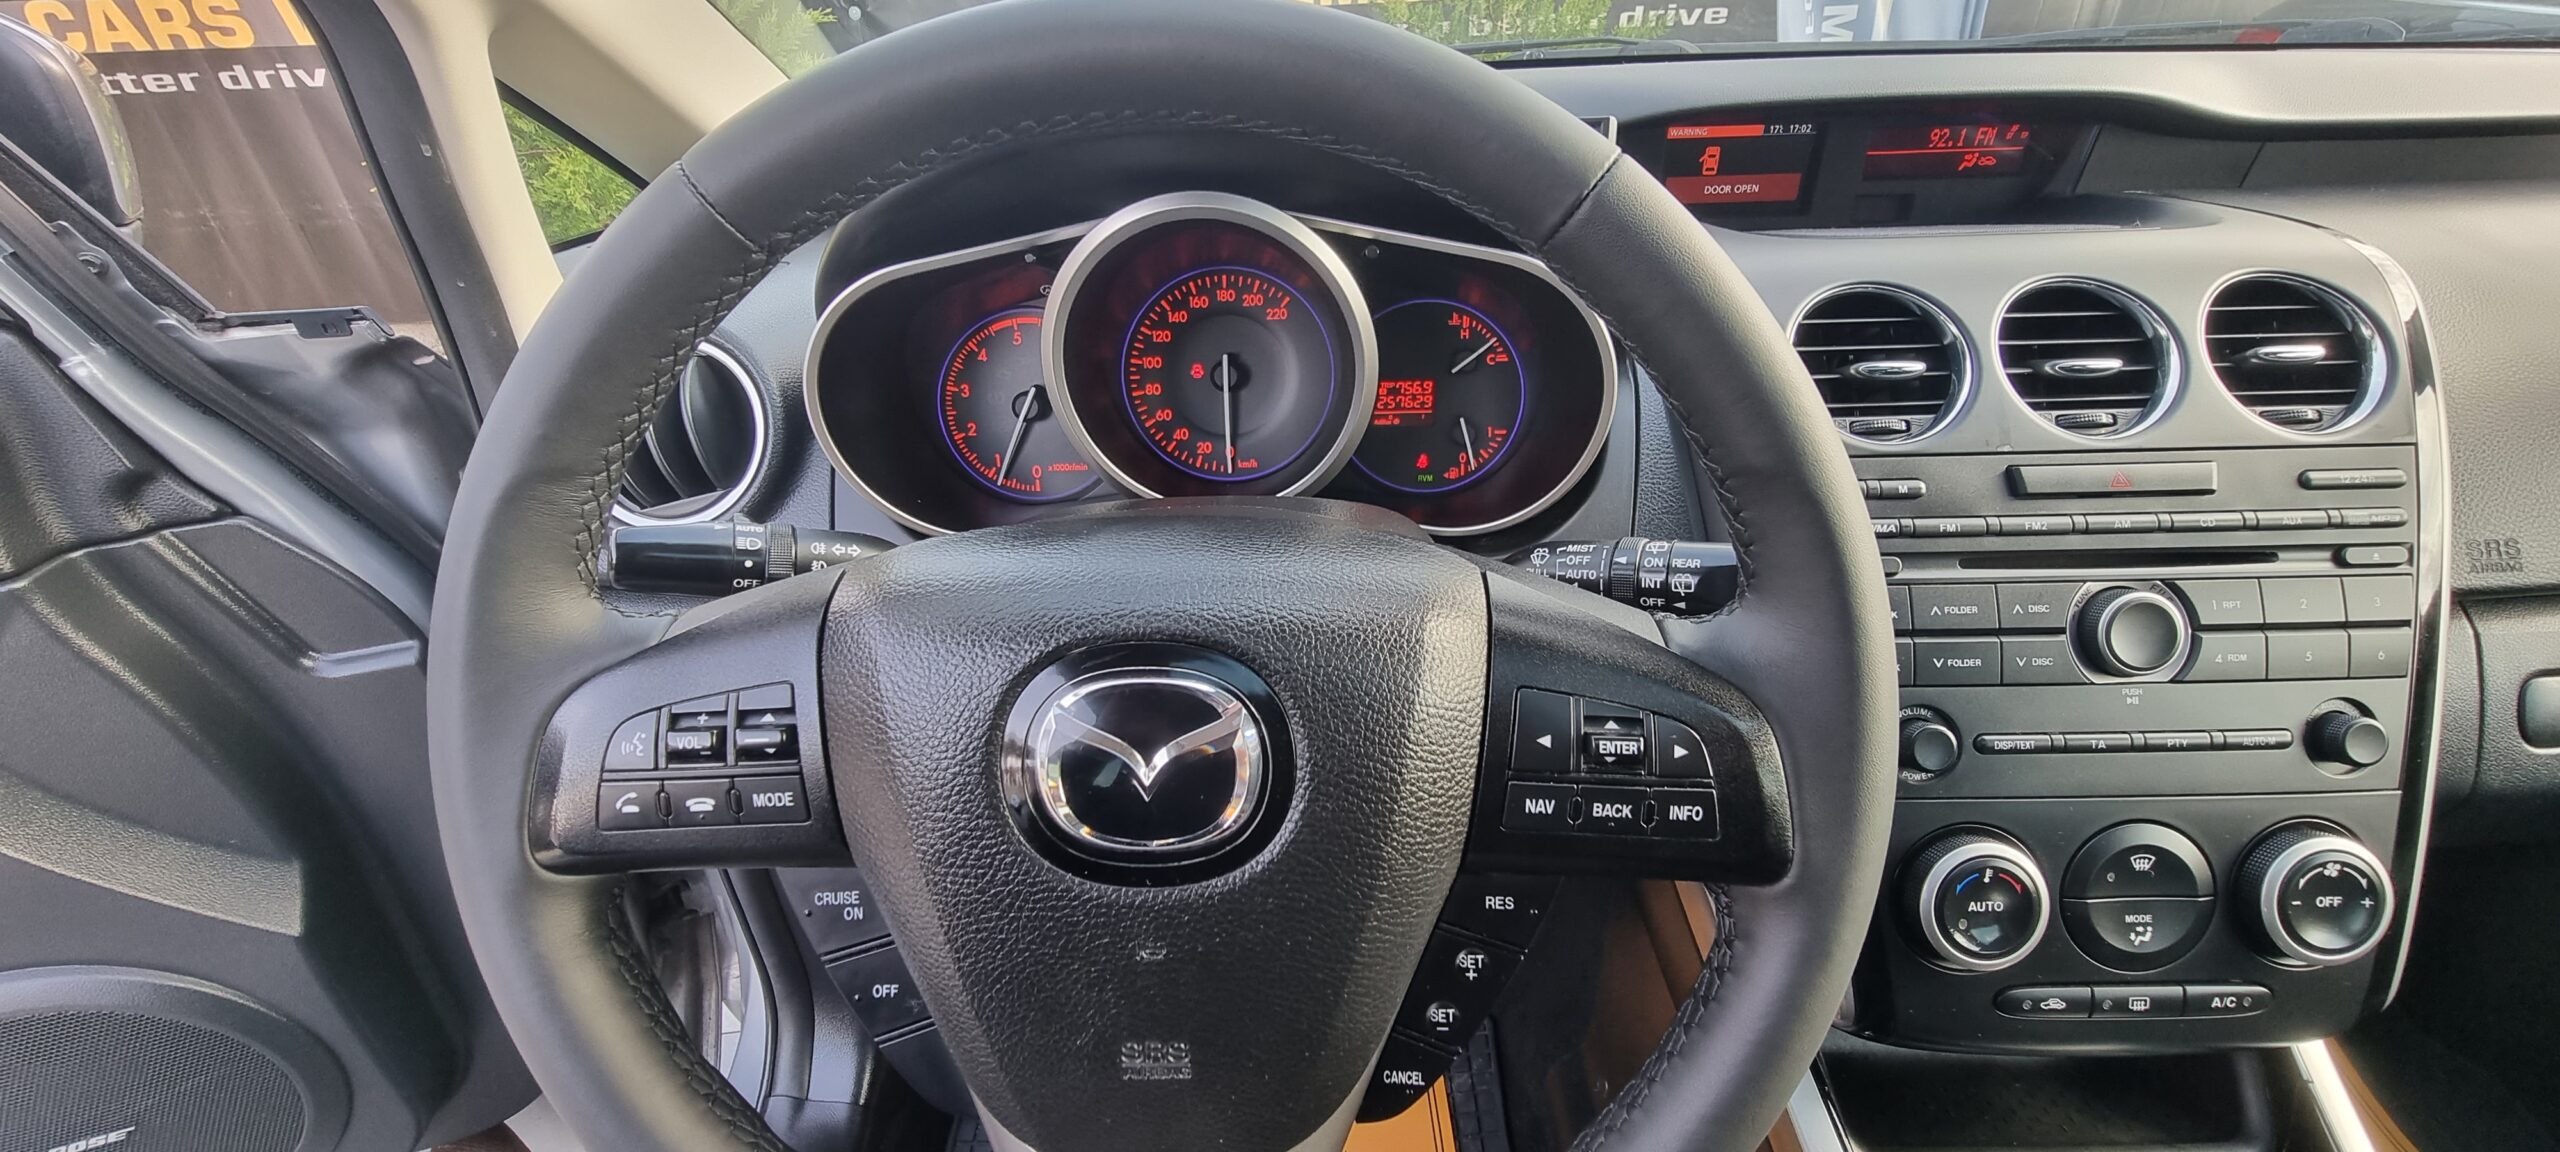 Mazda Cx7 2011